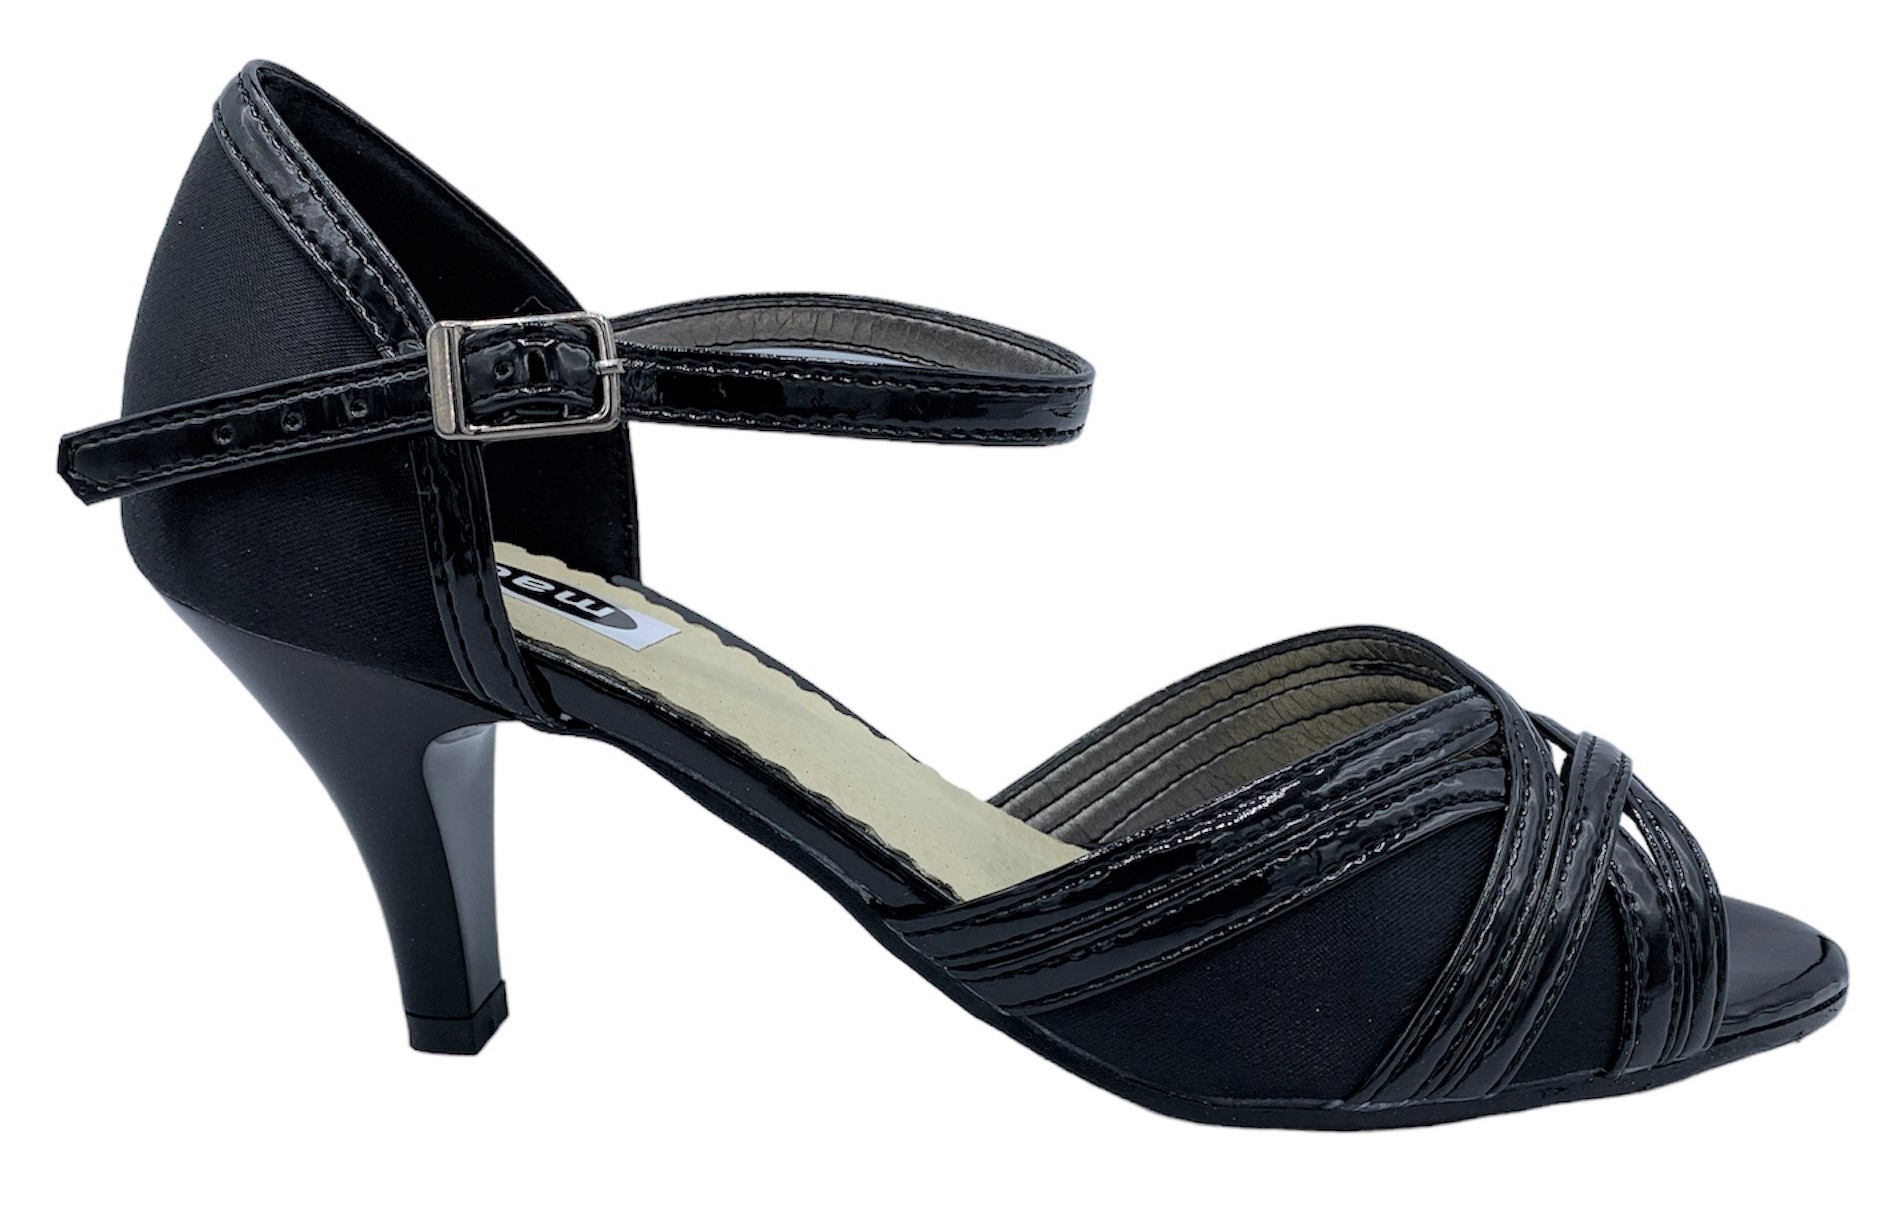 Dámská společenská obuv Madler 145-SL černá Velikost: 36 (EU)